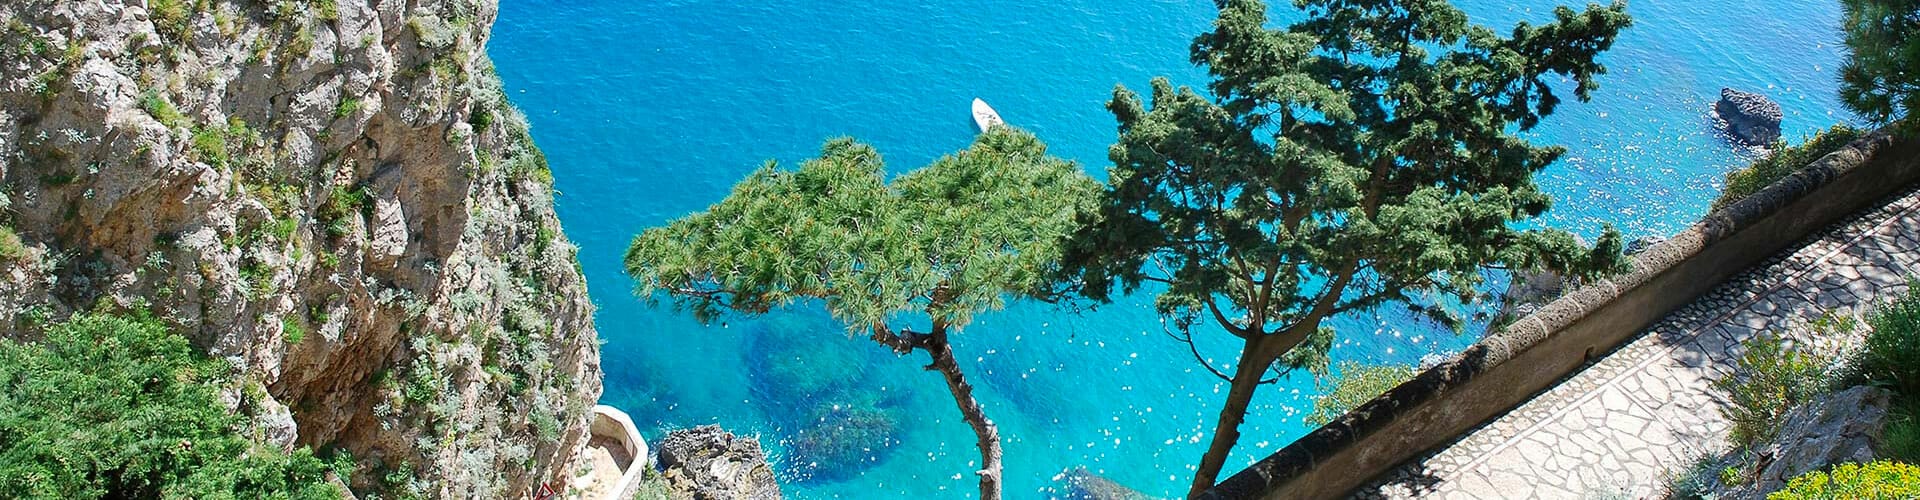 Amalfi Coast Tour